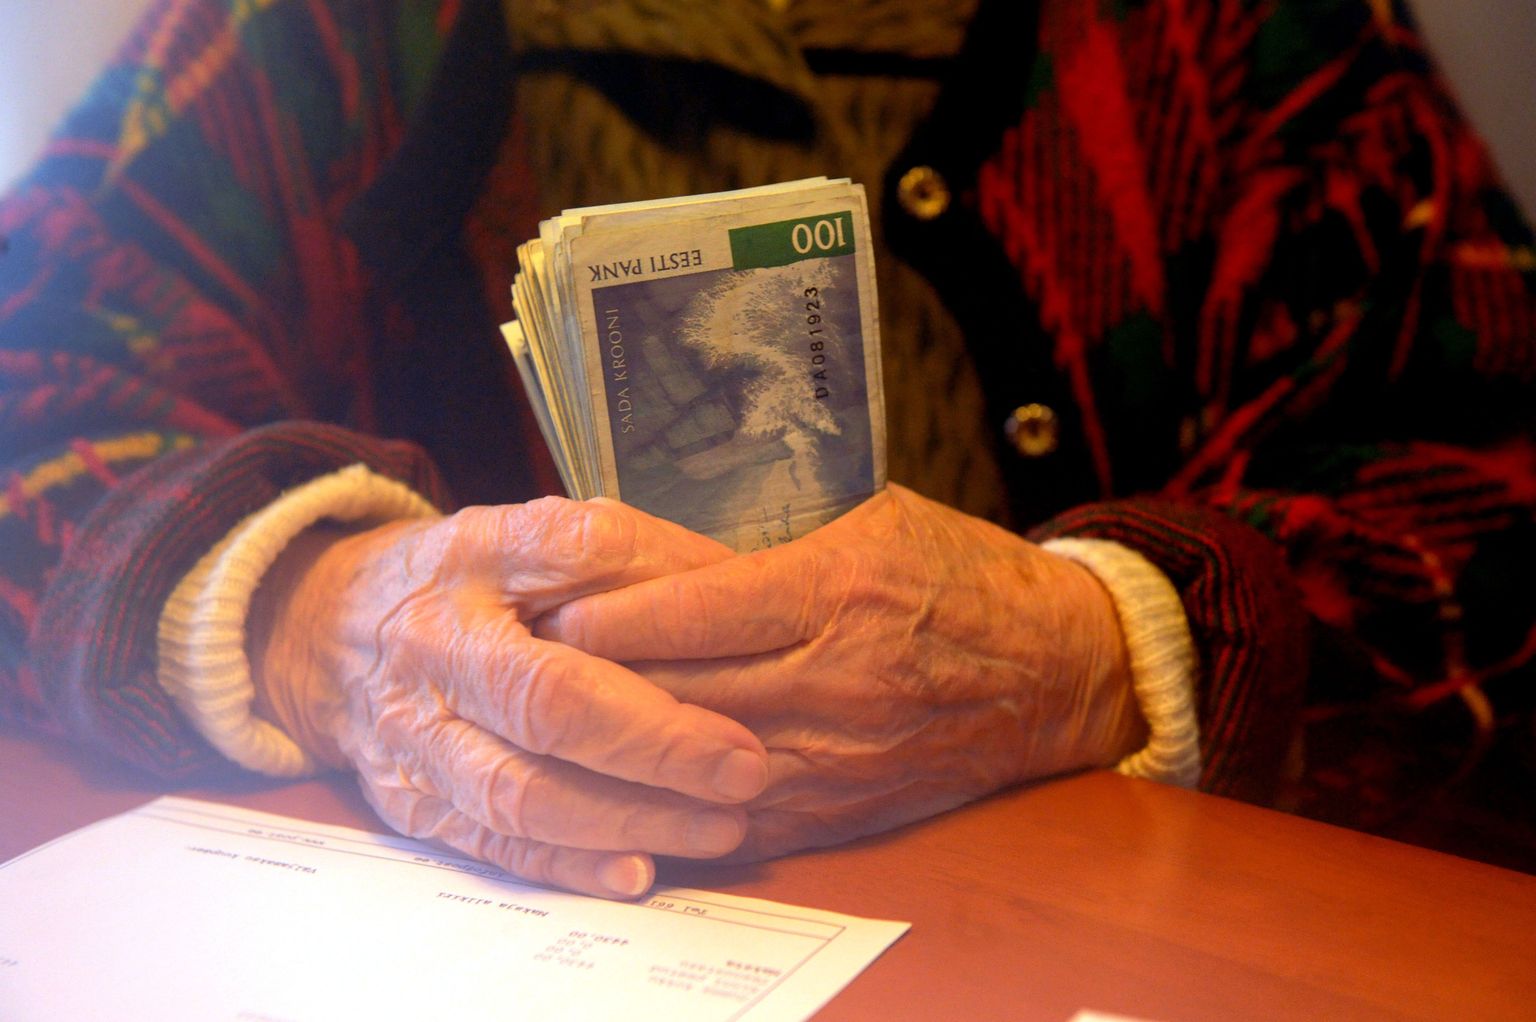 Kõige varasem kuupäev, millest alates enam sooduspensioni välja teenida ei saa, võib olla 1. jaanuar 2011.